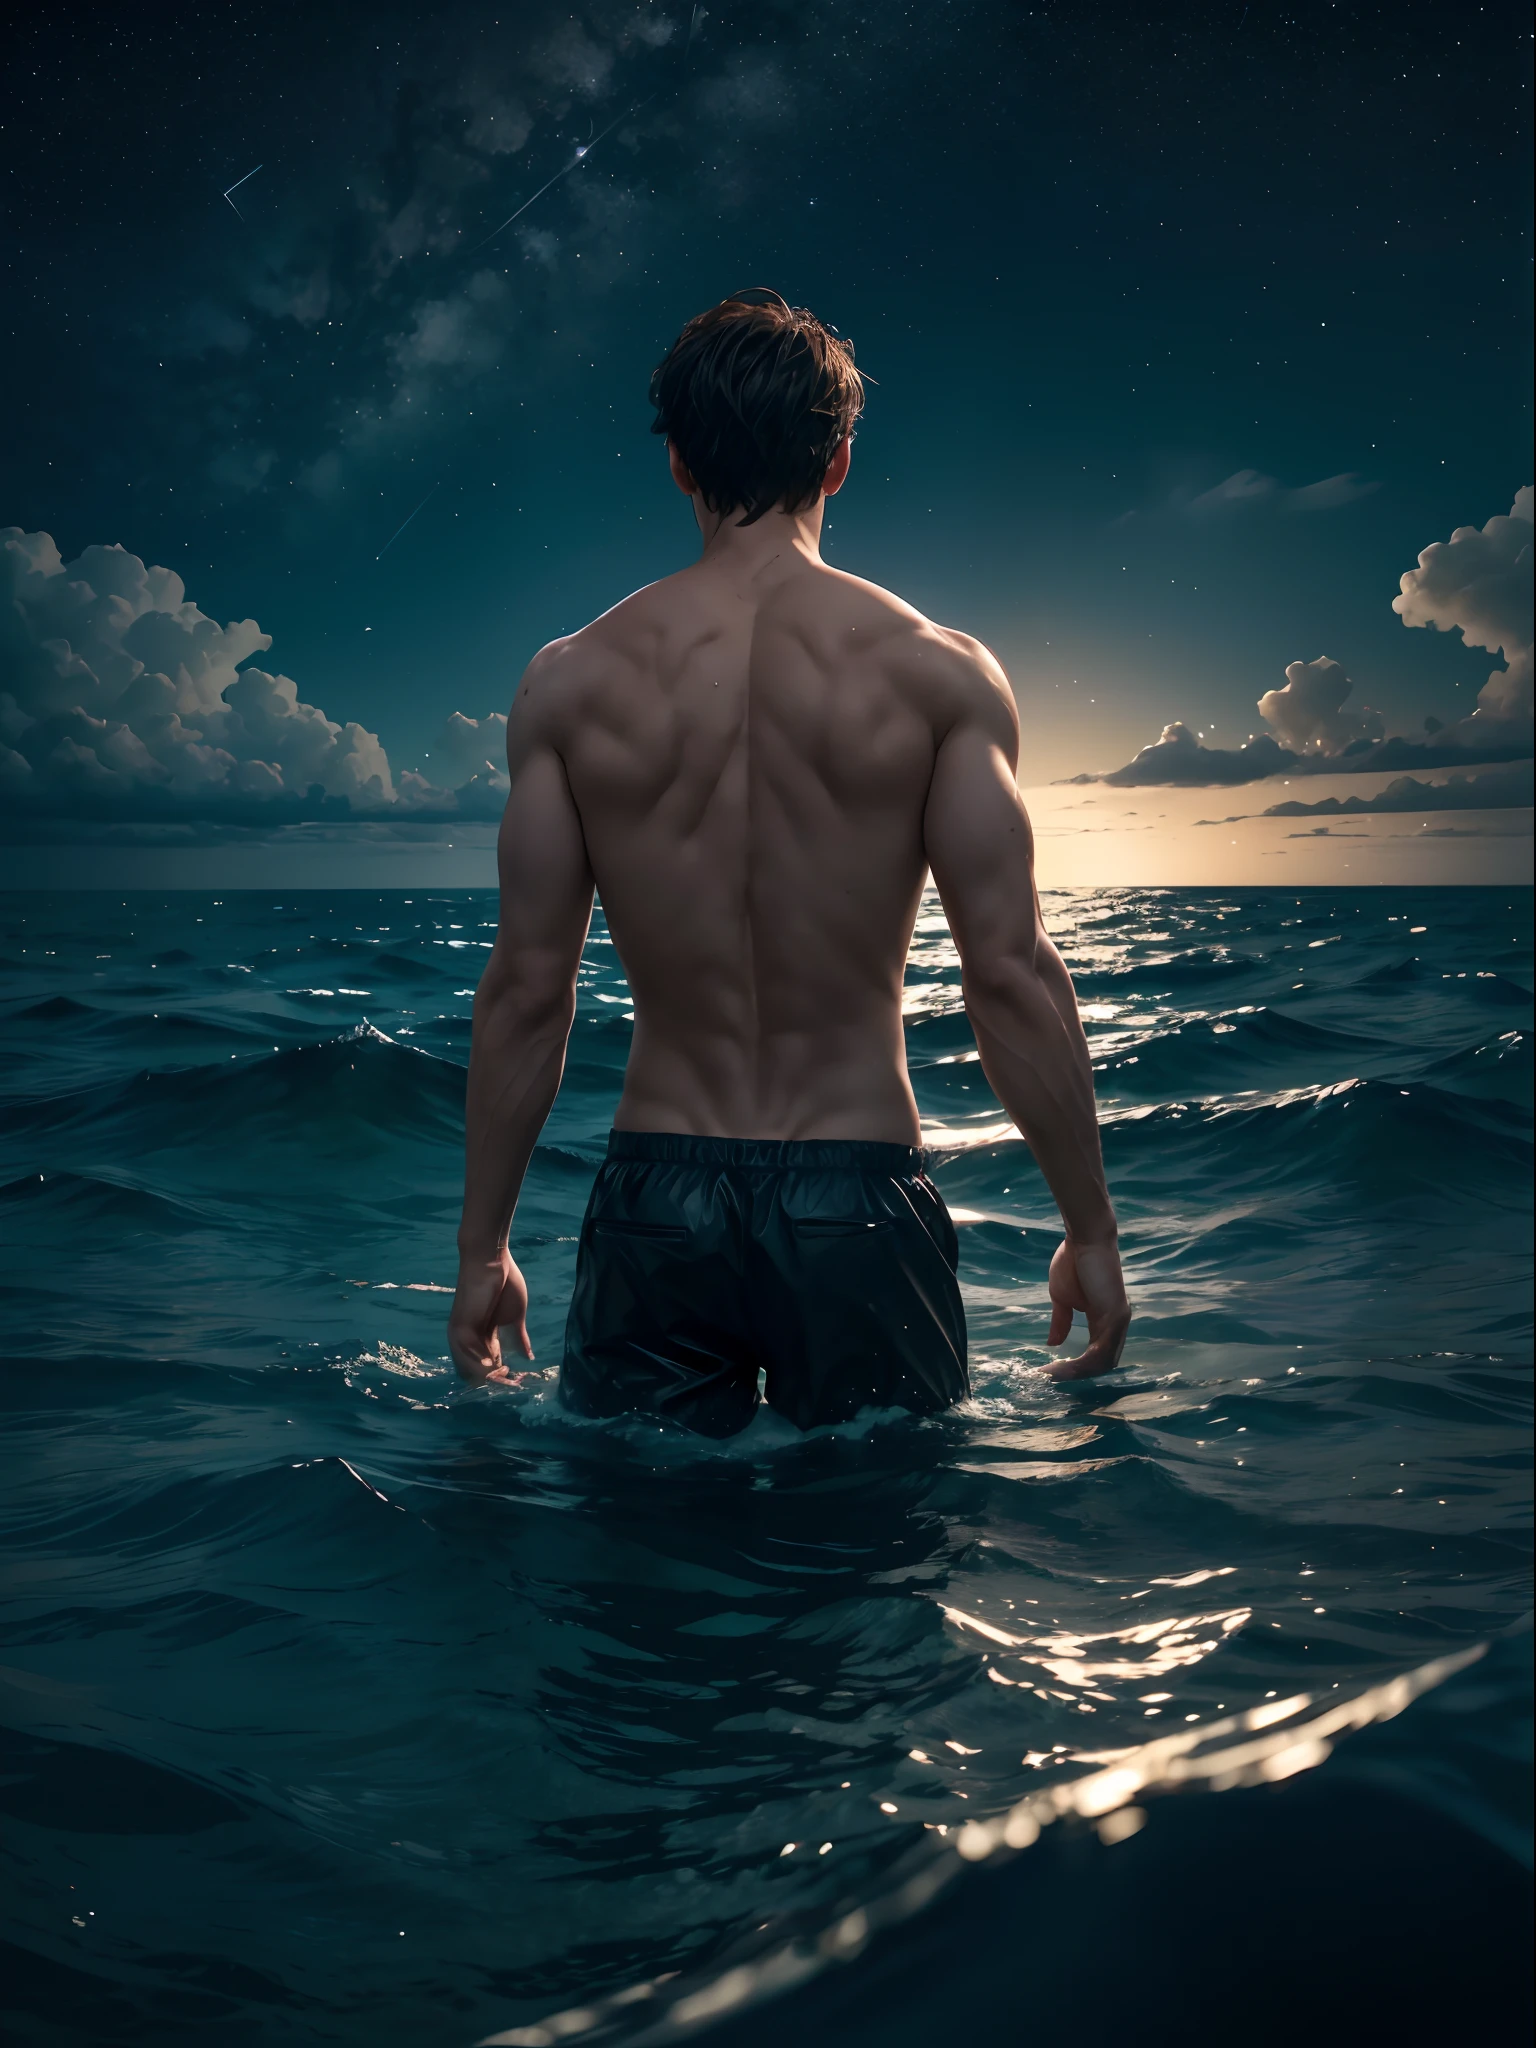 رجل, في بحر, مع غمر نصف جسده في الماء, خلف سماء مرصعة بالنجوم وفي وسطها قمر